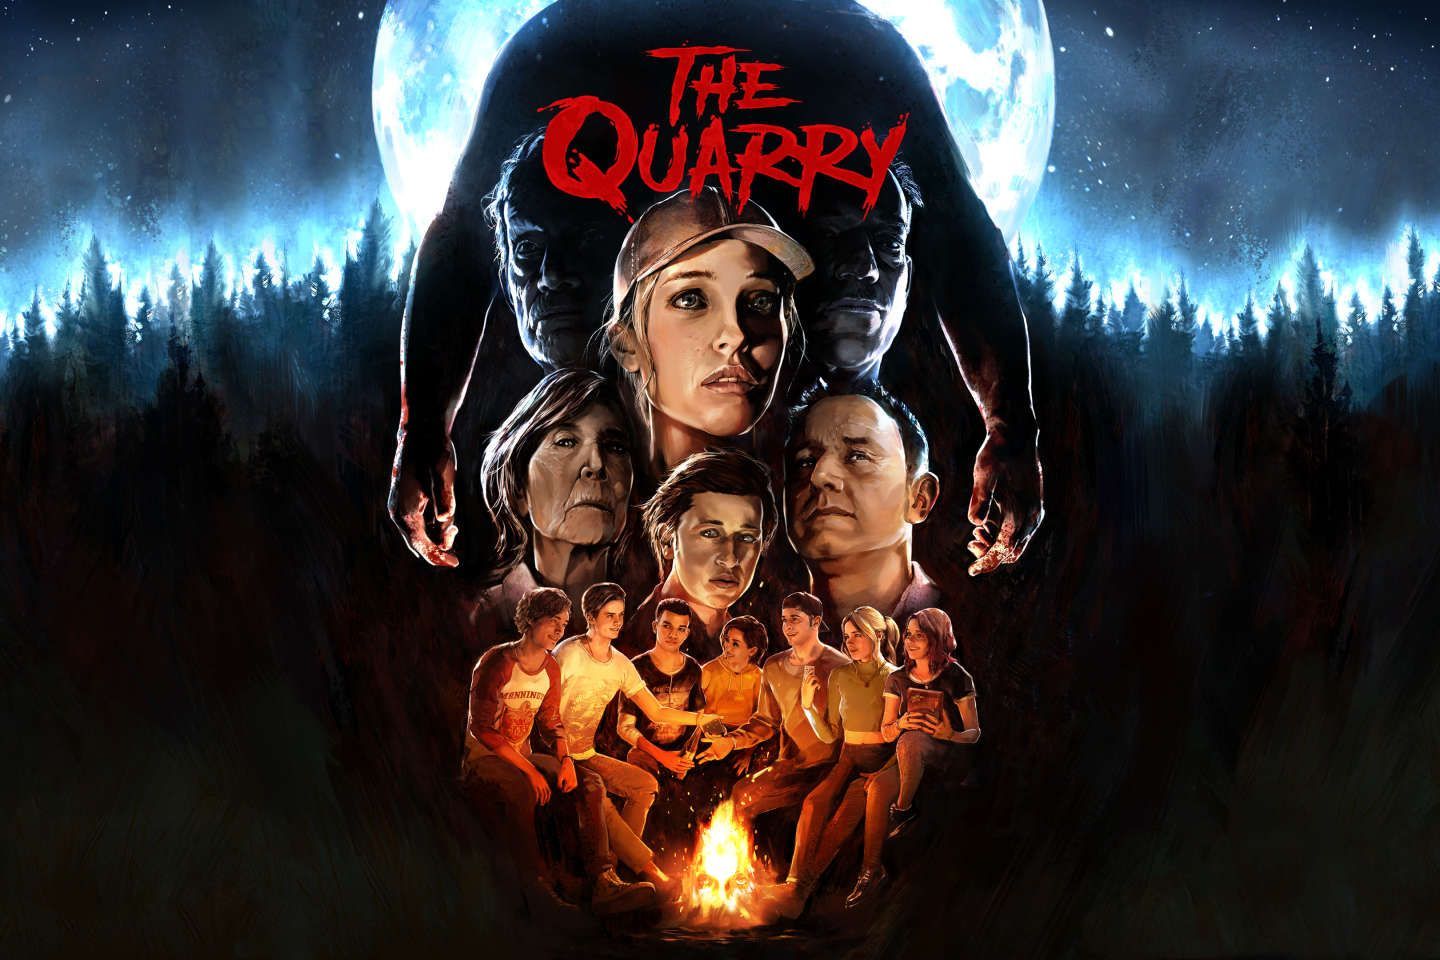 On a testé… « The Quarry », le film d’horreur dont vous êtes le héros